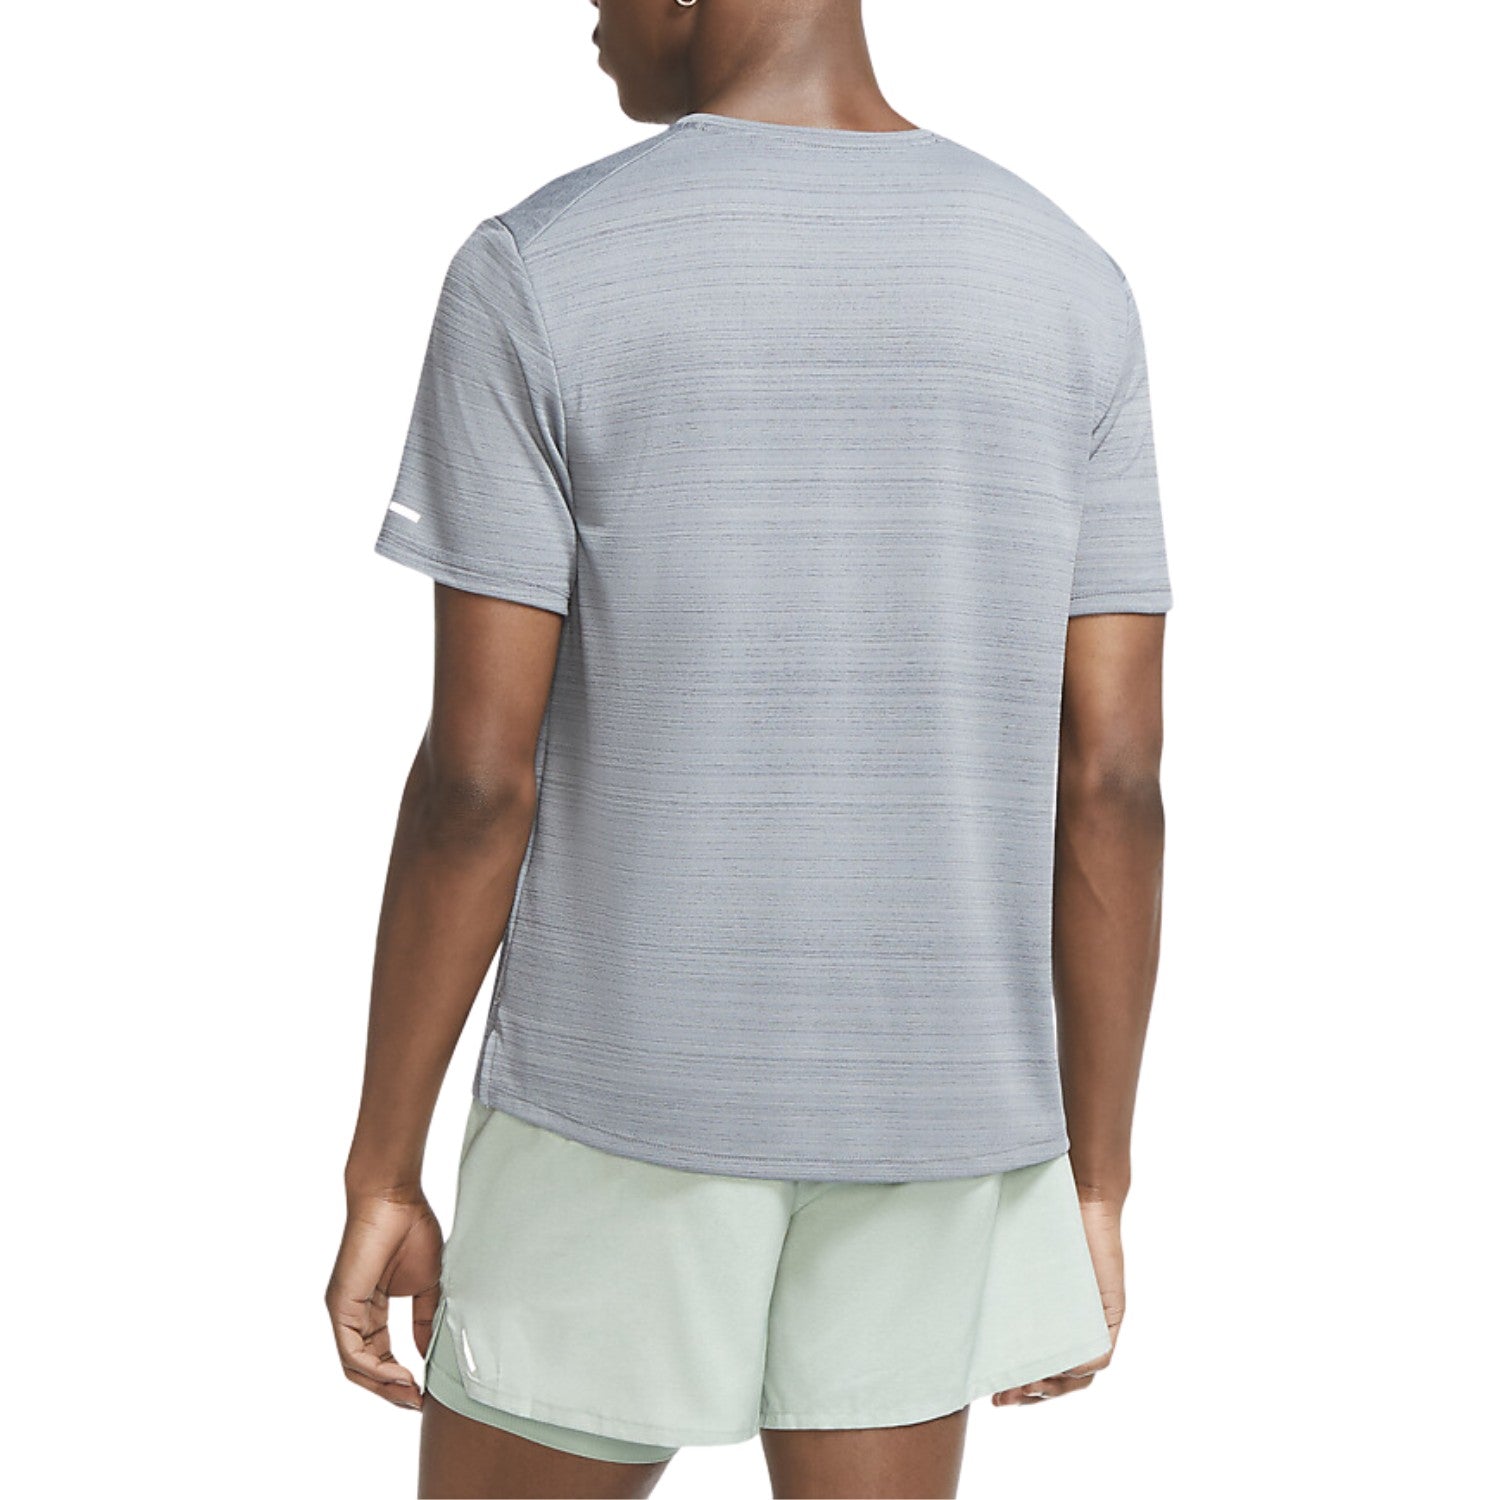 Nike Dri-fit Miler Short Sleeves Top Mens Style : Cu5992